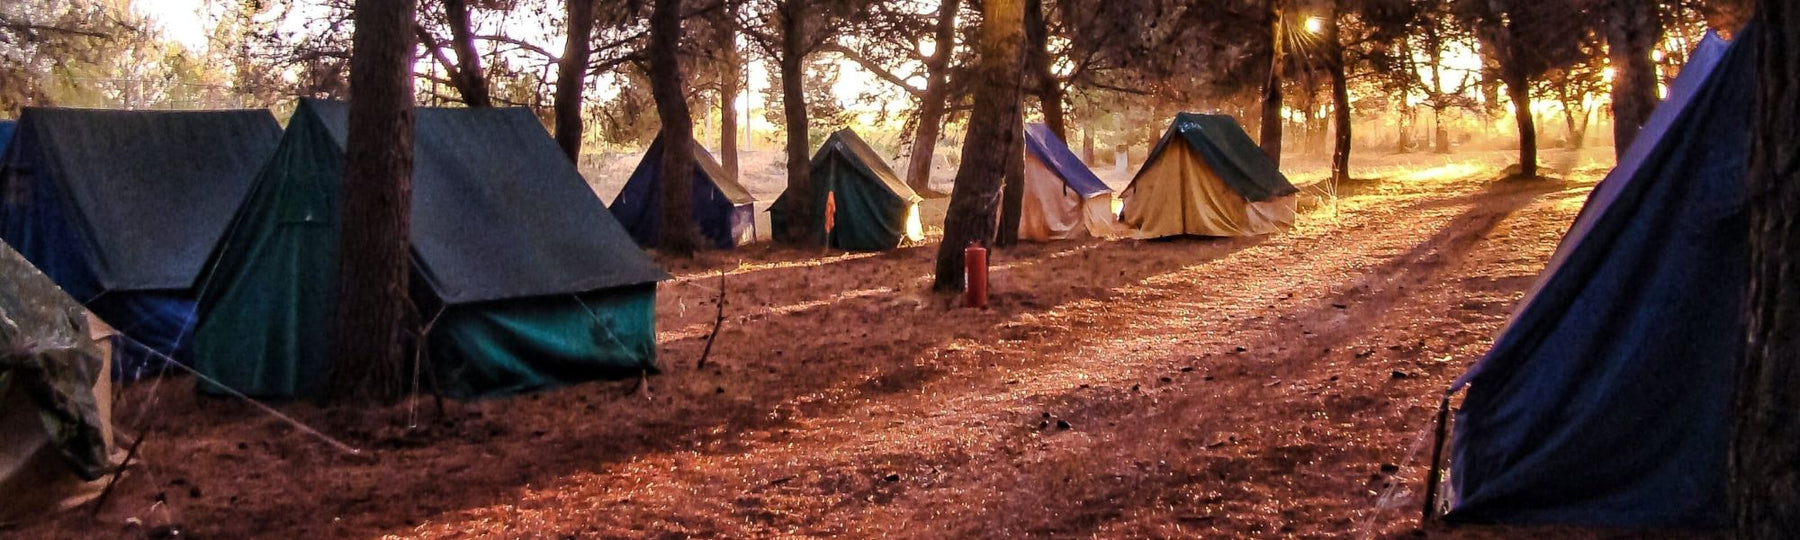 10 conseils importants pour le camping par Snugpak - Welkit